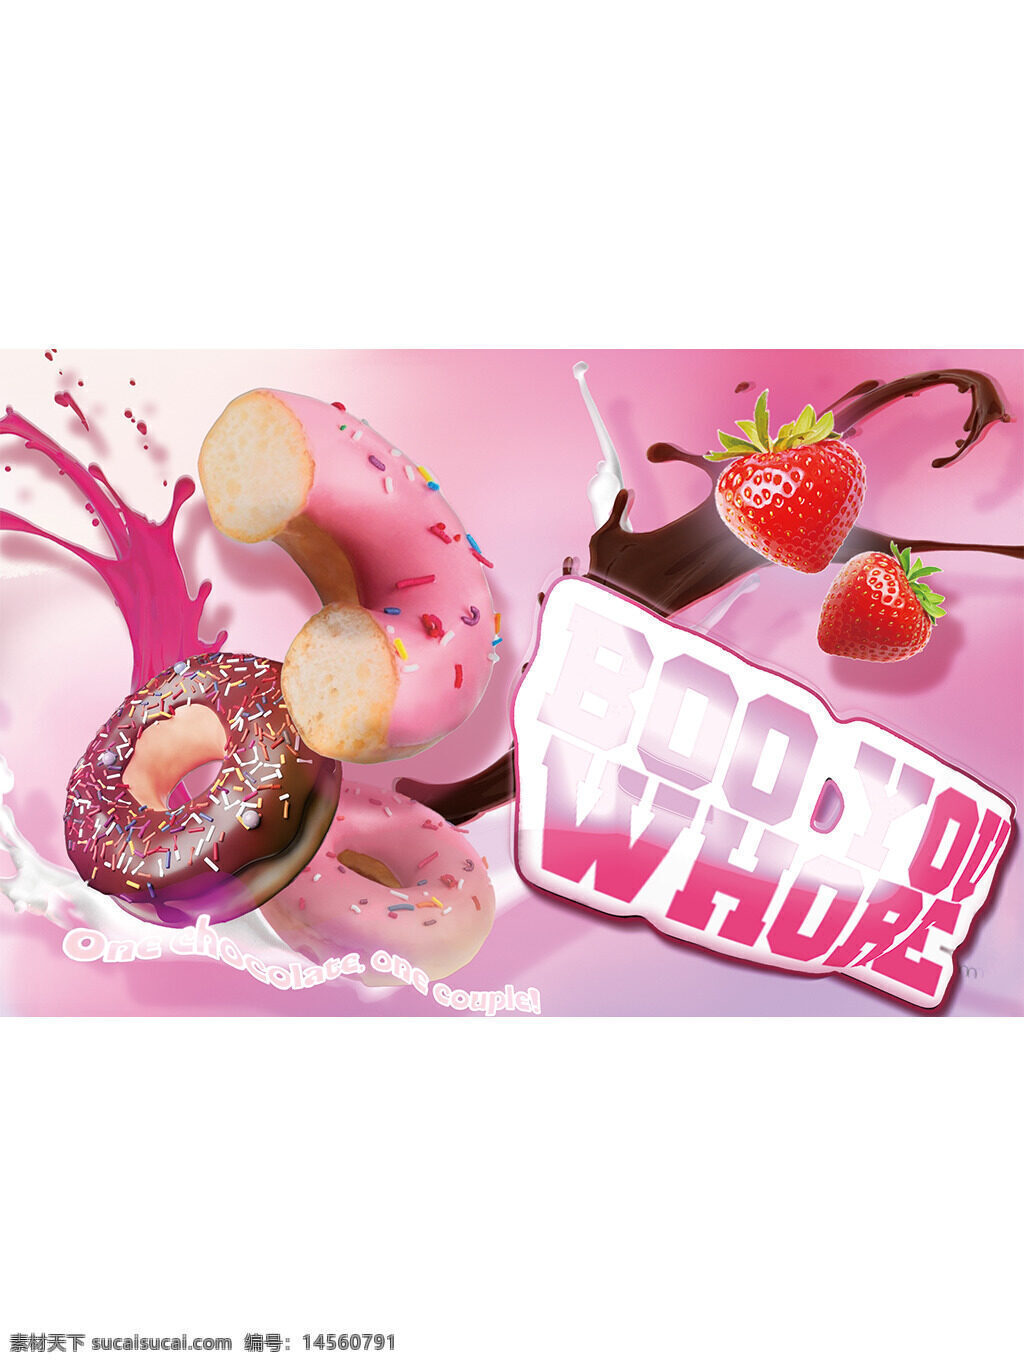 甜甜圈海报 美食 甜品 甜品广告 美食广告 推广海报 促销海报 品牌广告